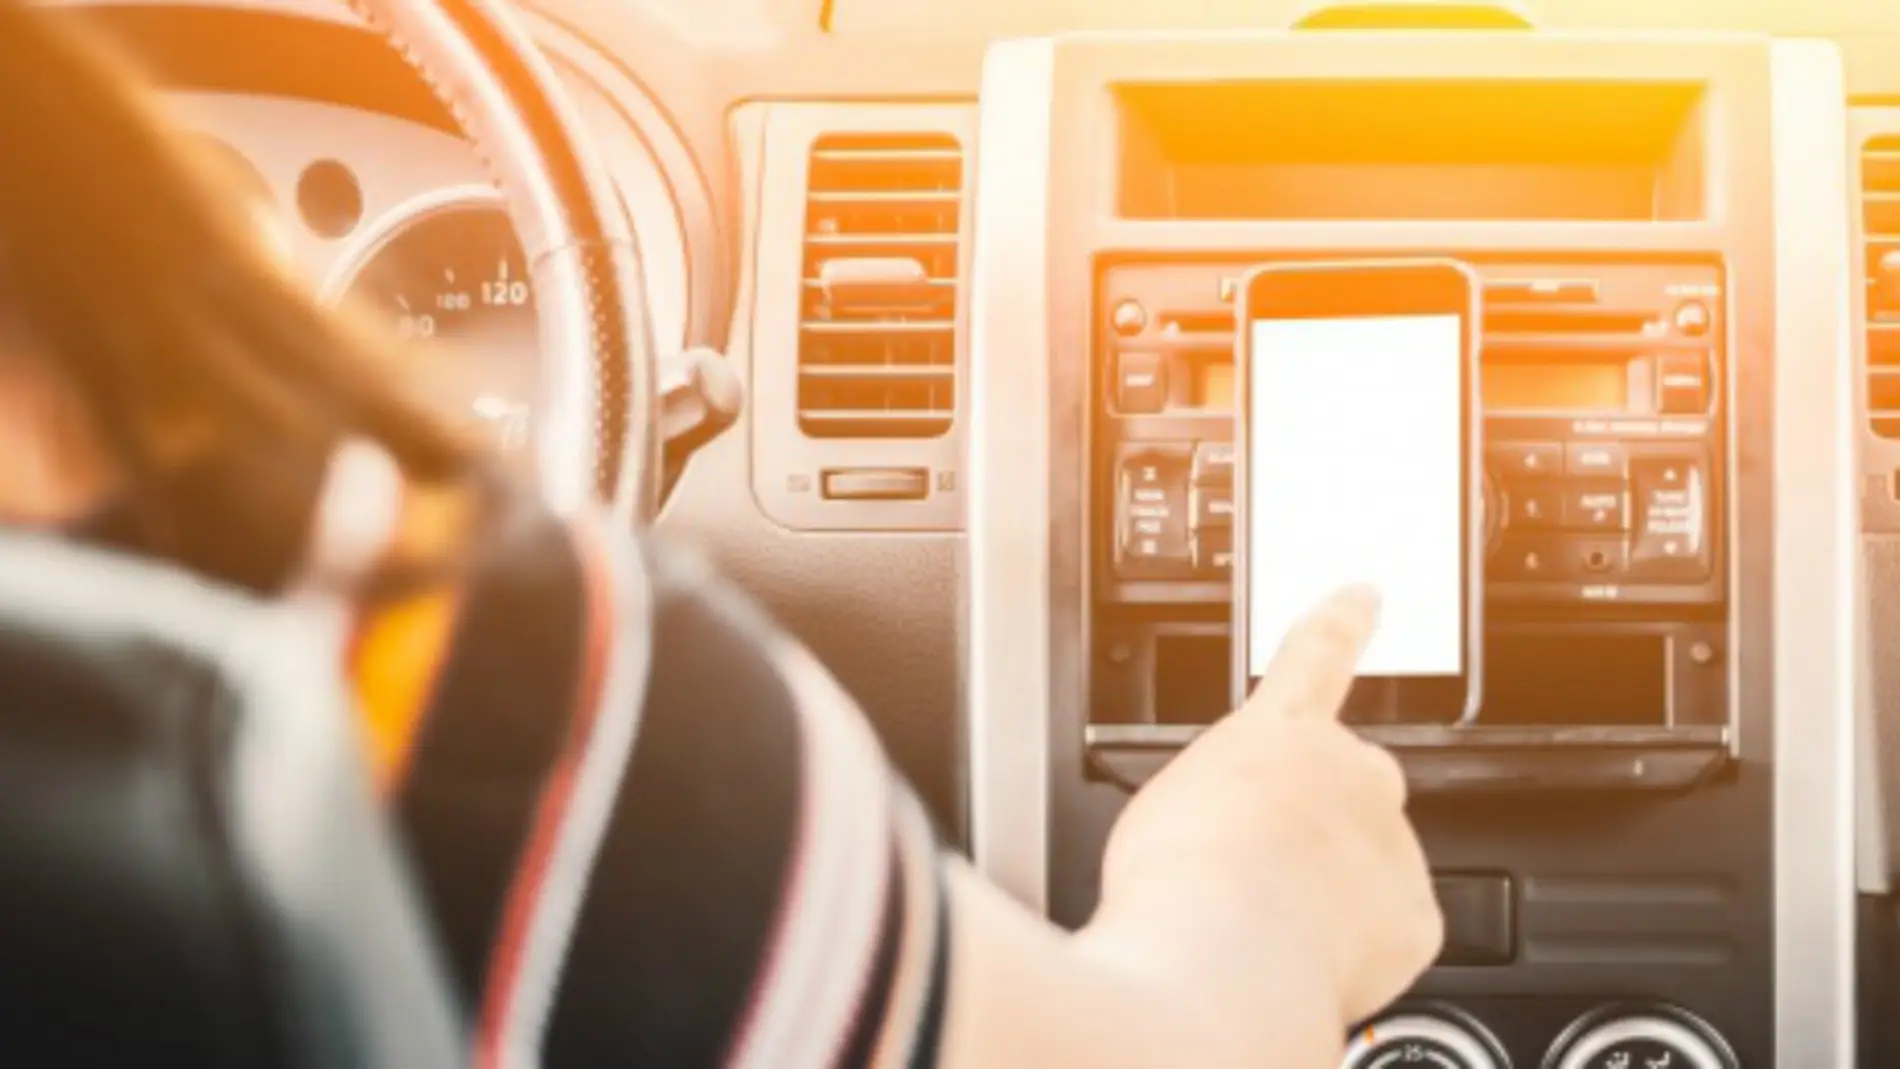 Multas por llevar el móvil en un soporte en el parabrisas del coche: ¿qué  hay de cierto?